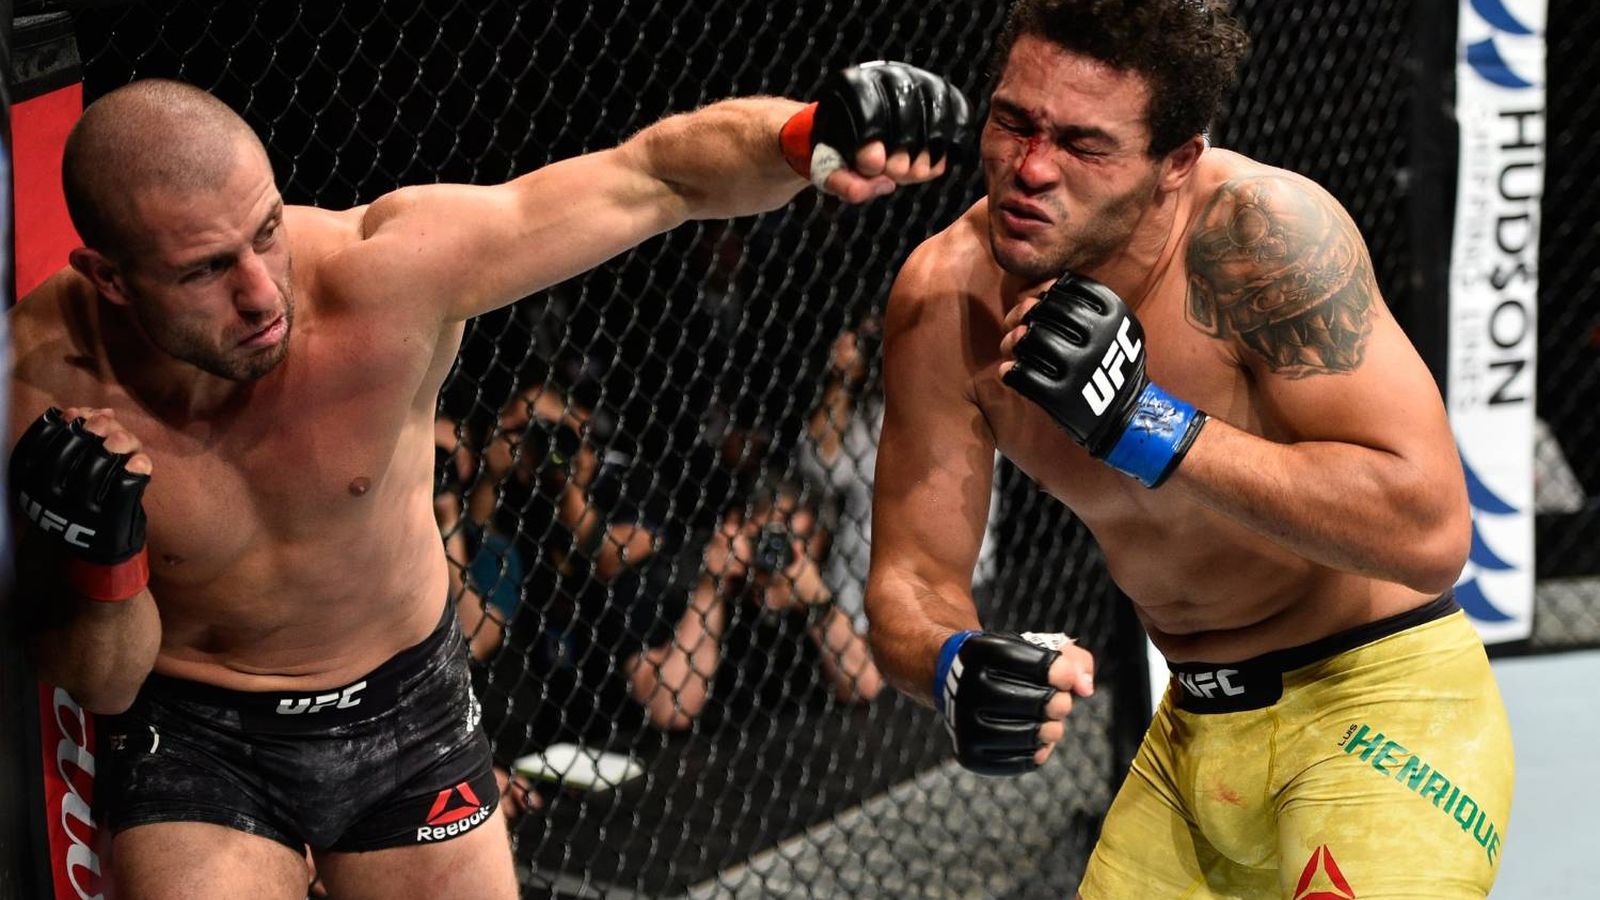 Foto: Saki golpeando con su zurda para lograr el nocaut sobre Silva. (Foto: UFC)